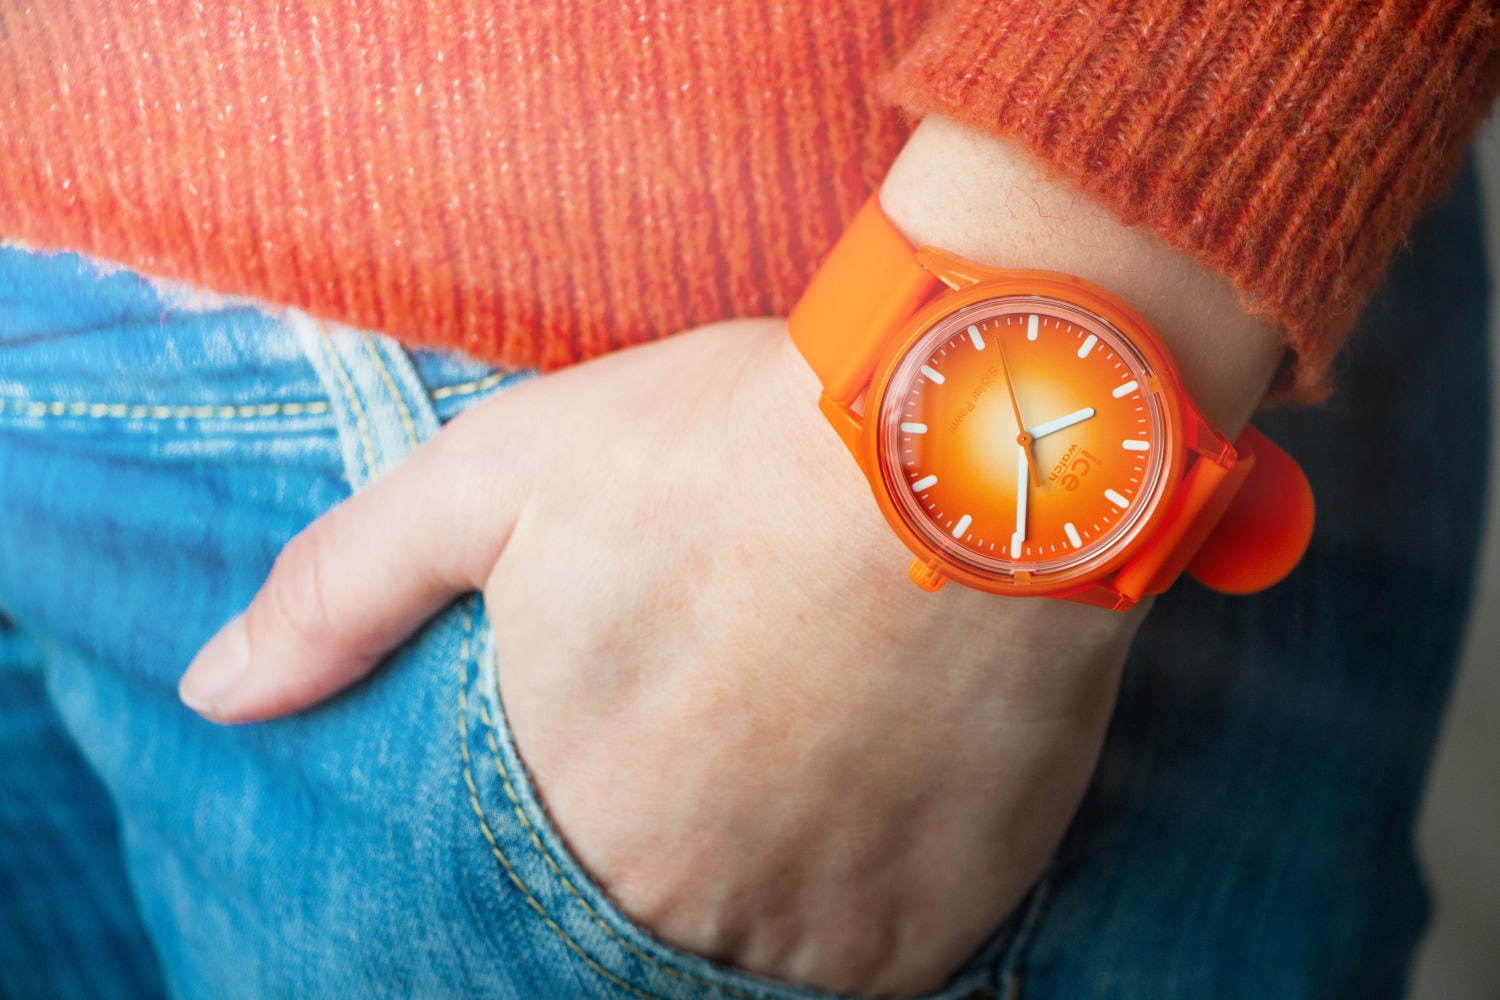 アイスウォッチ初のソーラー腕時計 ビビッド グラデカラーの限定モデルも 室内灯でも充電可 ファッションプレス